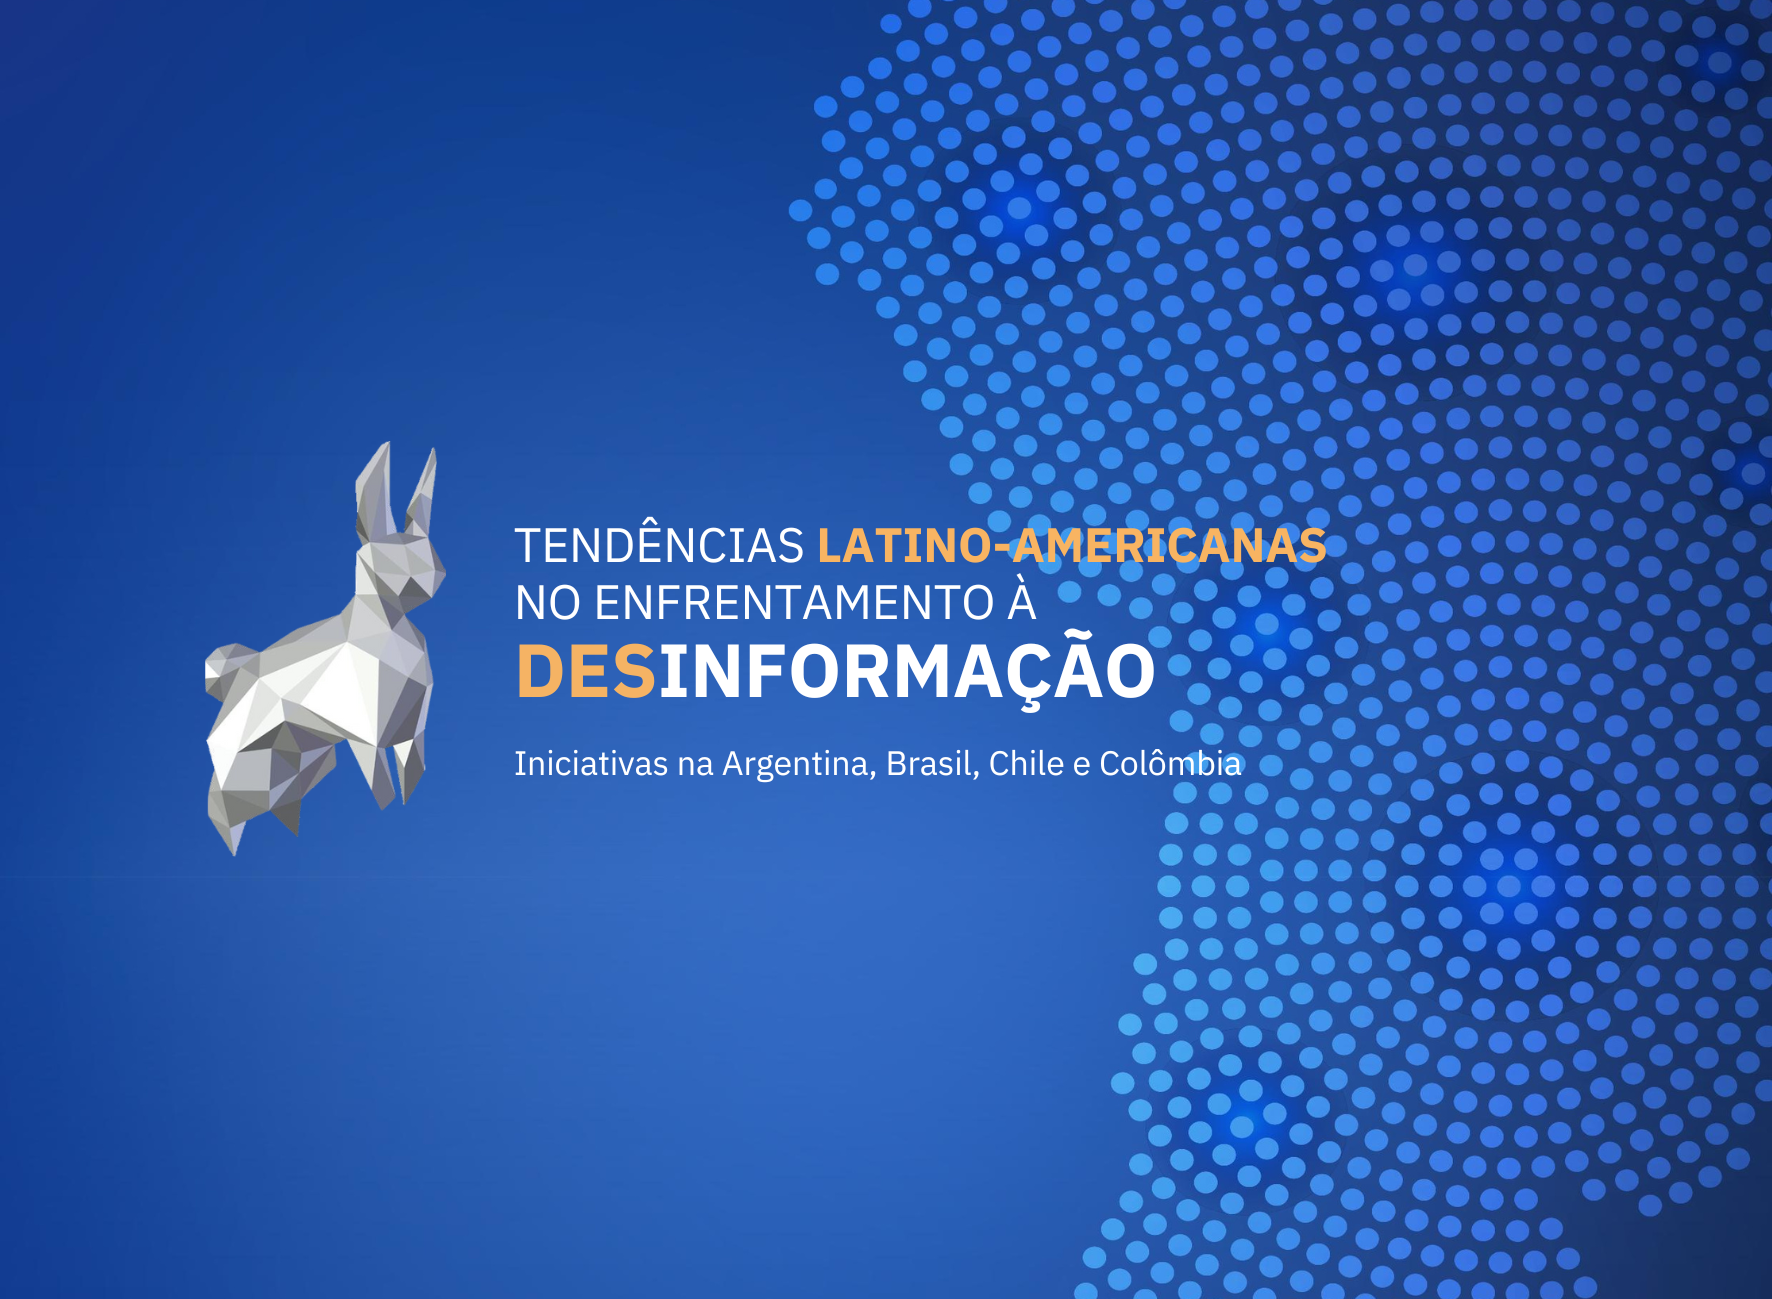 Relatório: “Tendências latino-americanas no enfrentamento à desinformação: iniciativas na Argentina, Brasil, Chile e Colômbia”